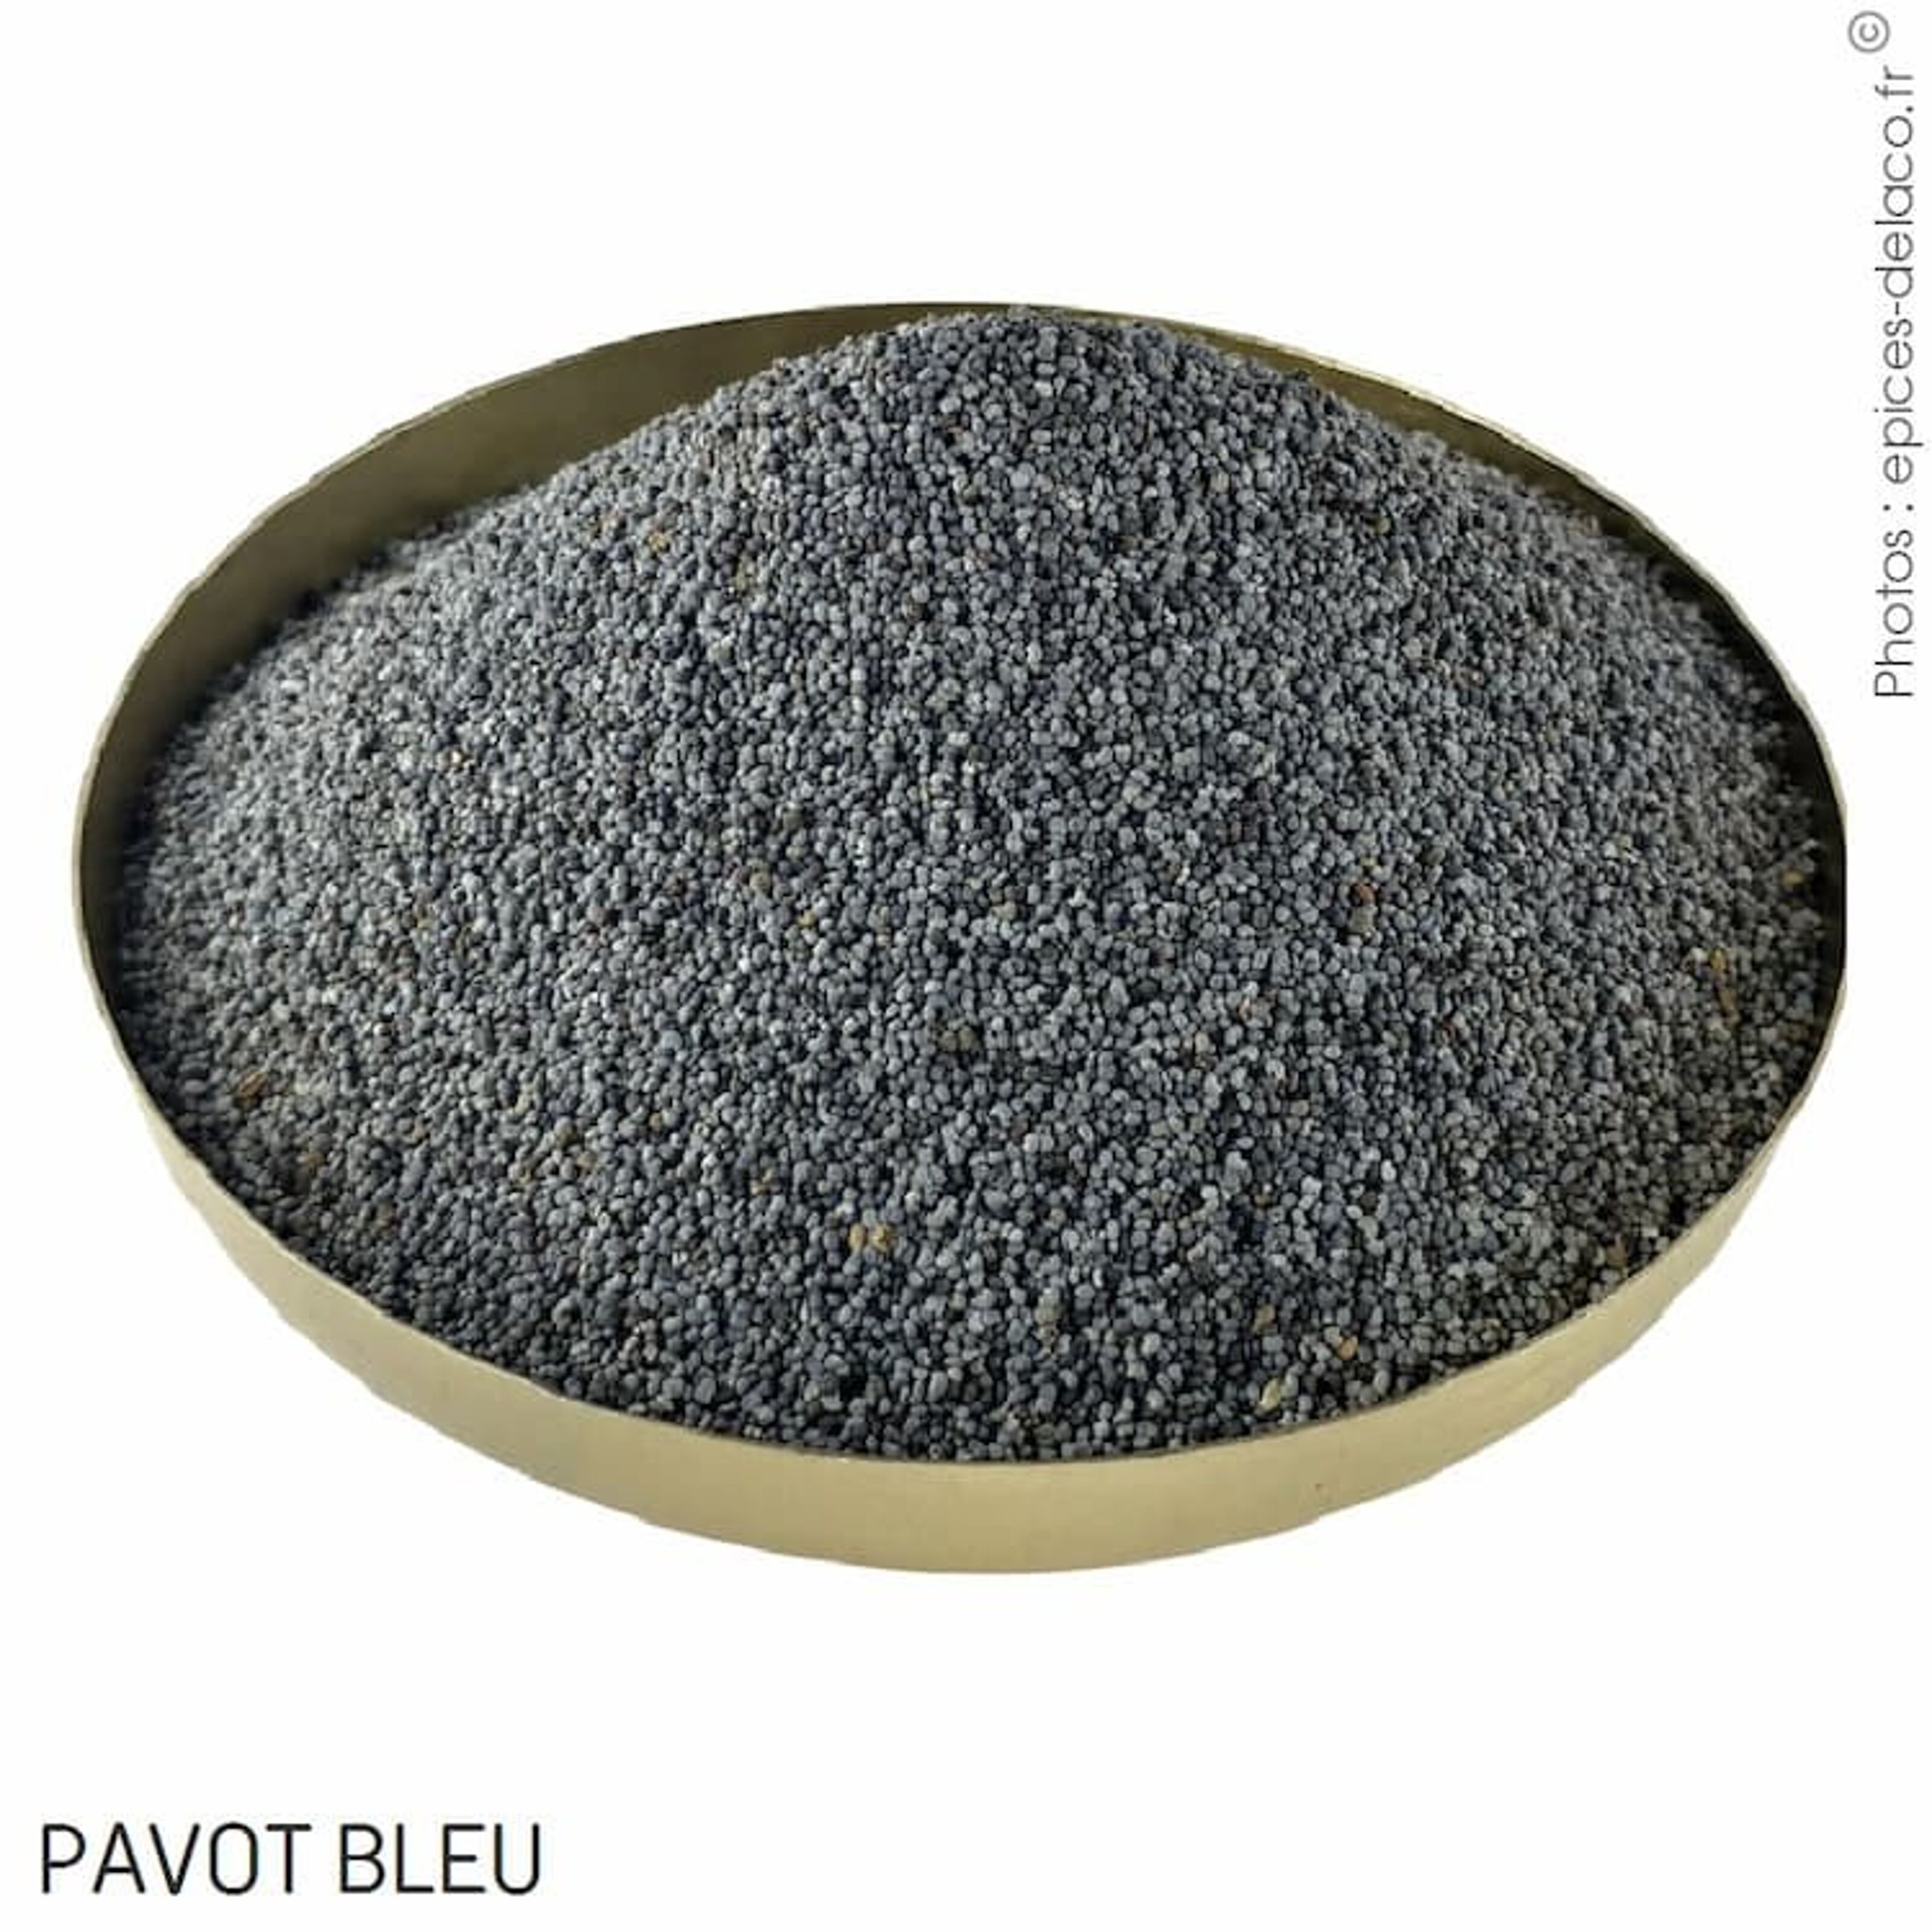 Pavot bleu en grains